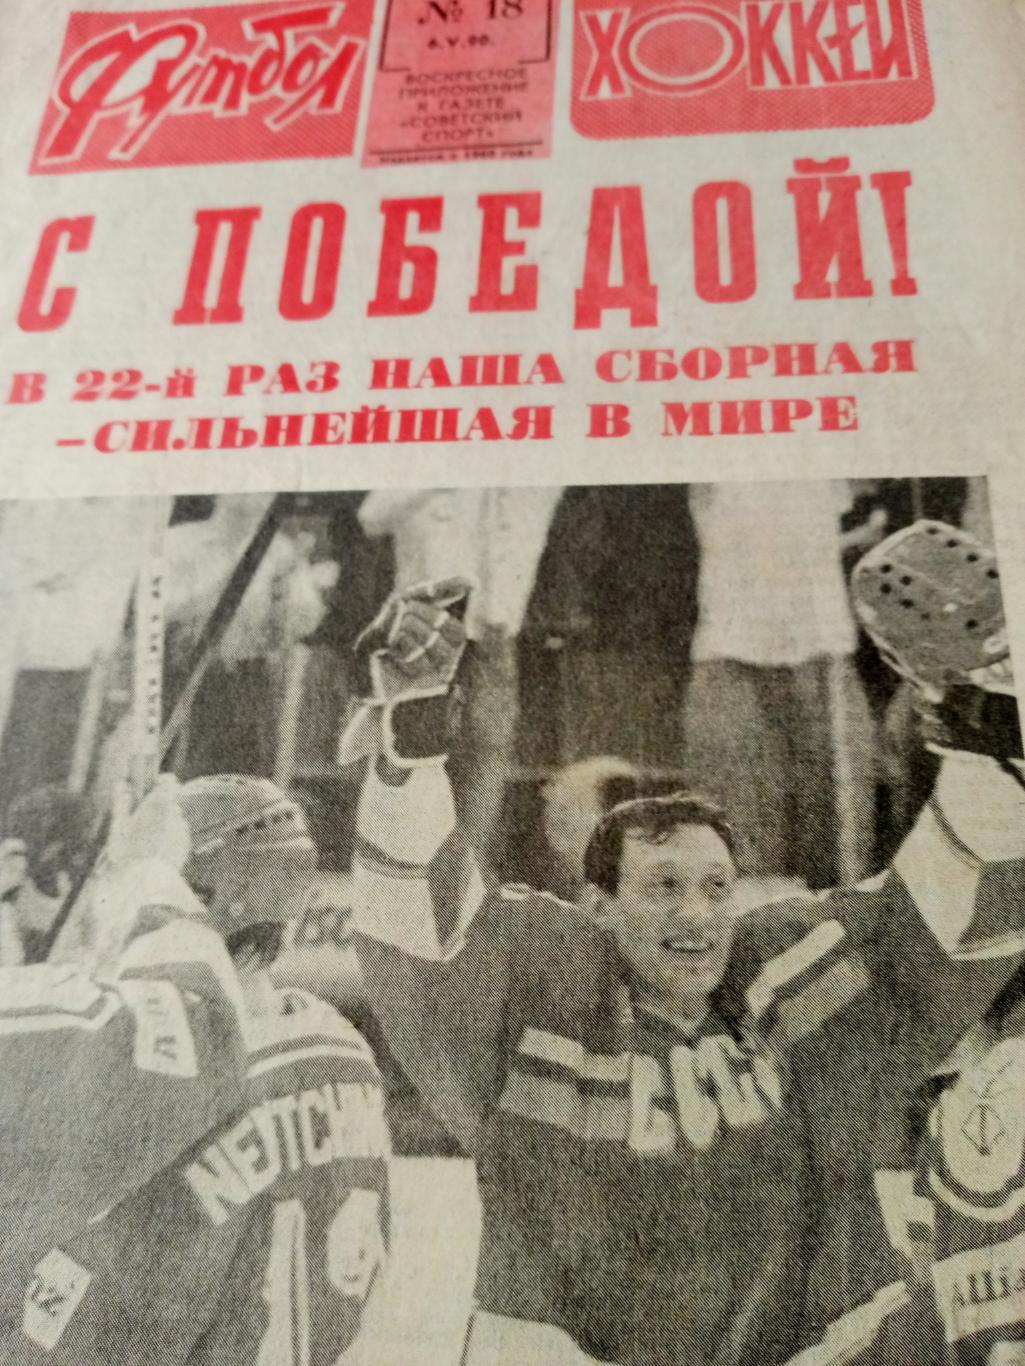 Футбол-Хоккей. 1990 год, №18 - С ПОБЕДОЙ!